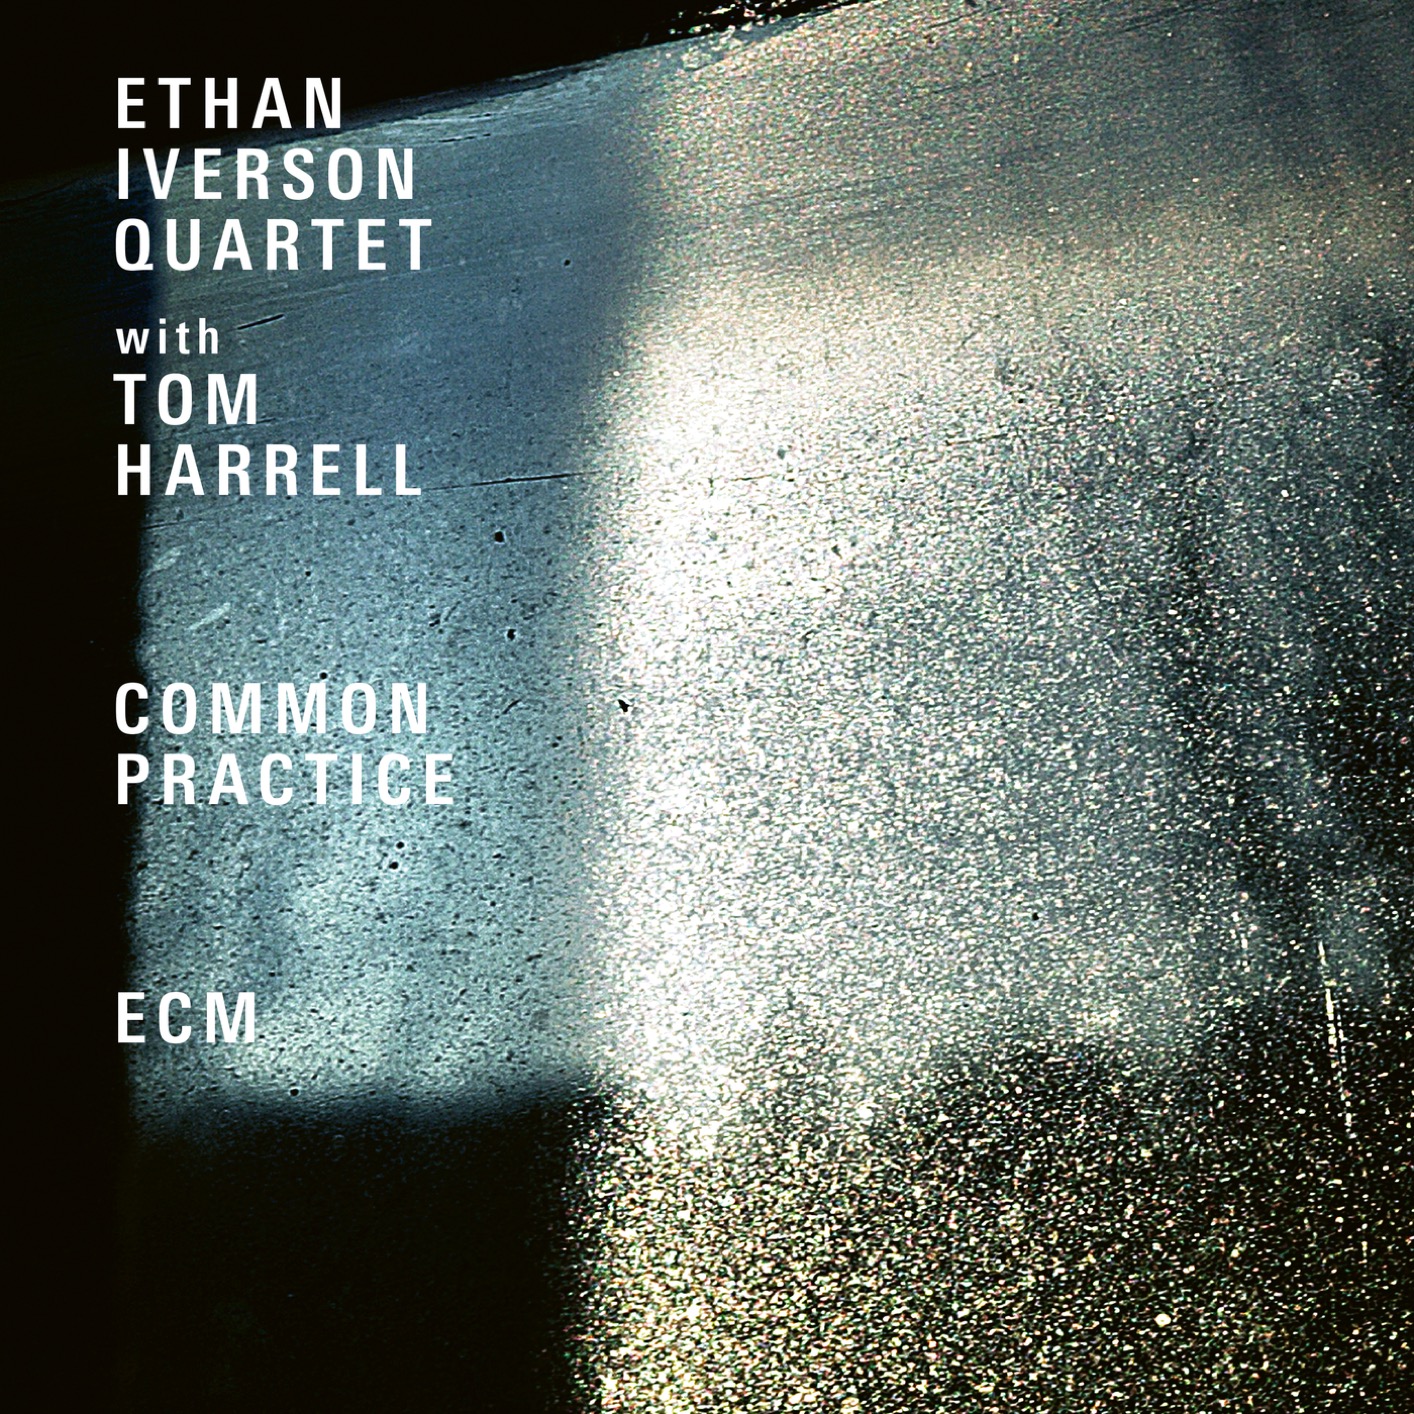 Ethan Iverson Quartet – Common Practice (Live At The Village Vanguard – 2017) (2019) [FLAC 24bit/96kHz]